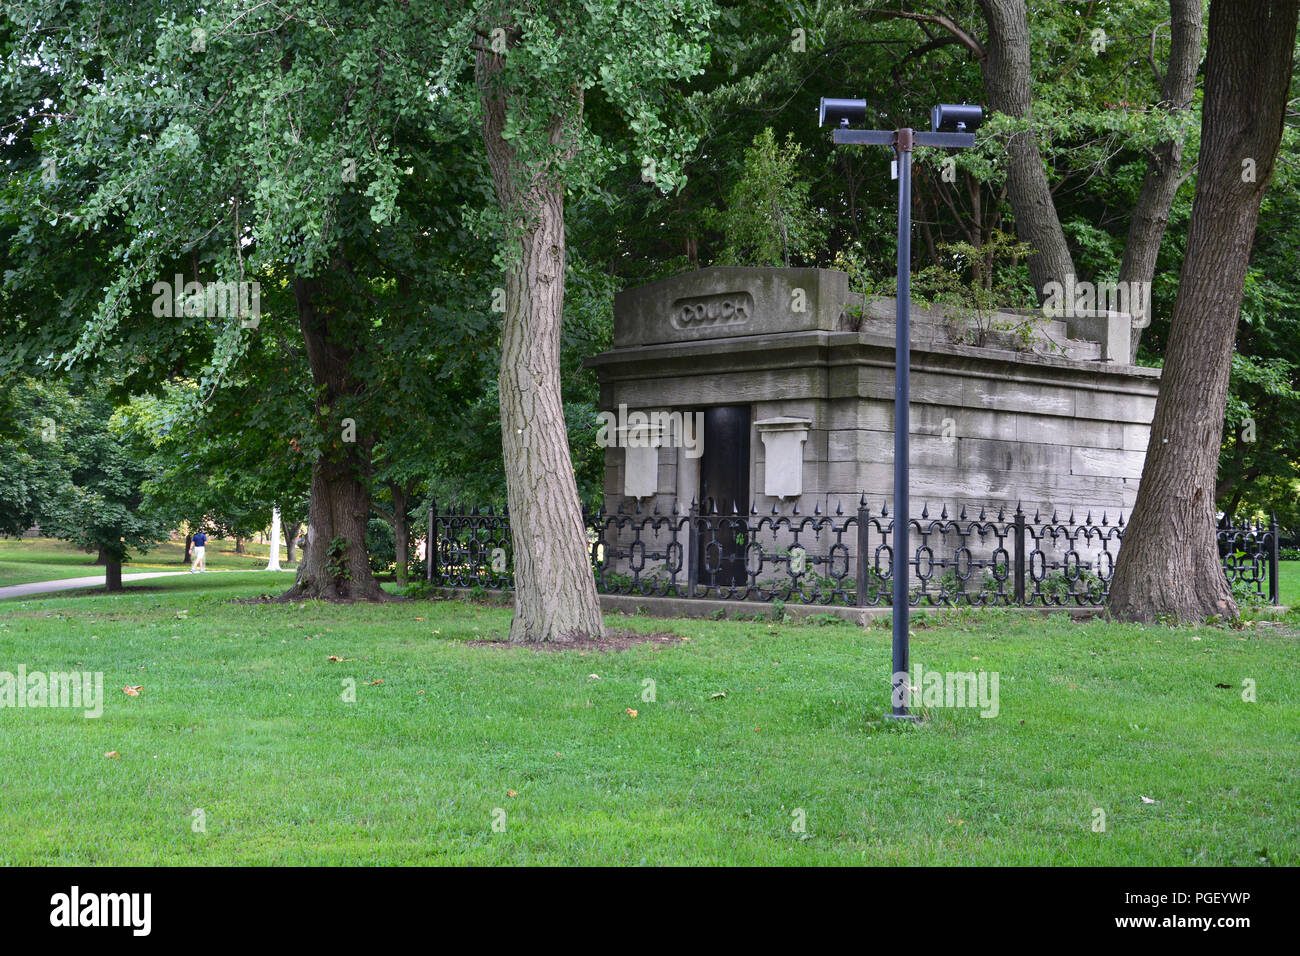 La tombe de la table à Lincoln Park est un vestige de l'ancien cimetière public de la ville et devraient avoir été déplacé après l'incendie de Chicago de 1871. Banque D'Images